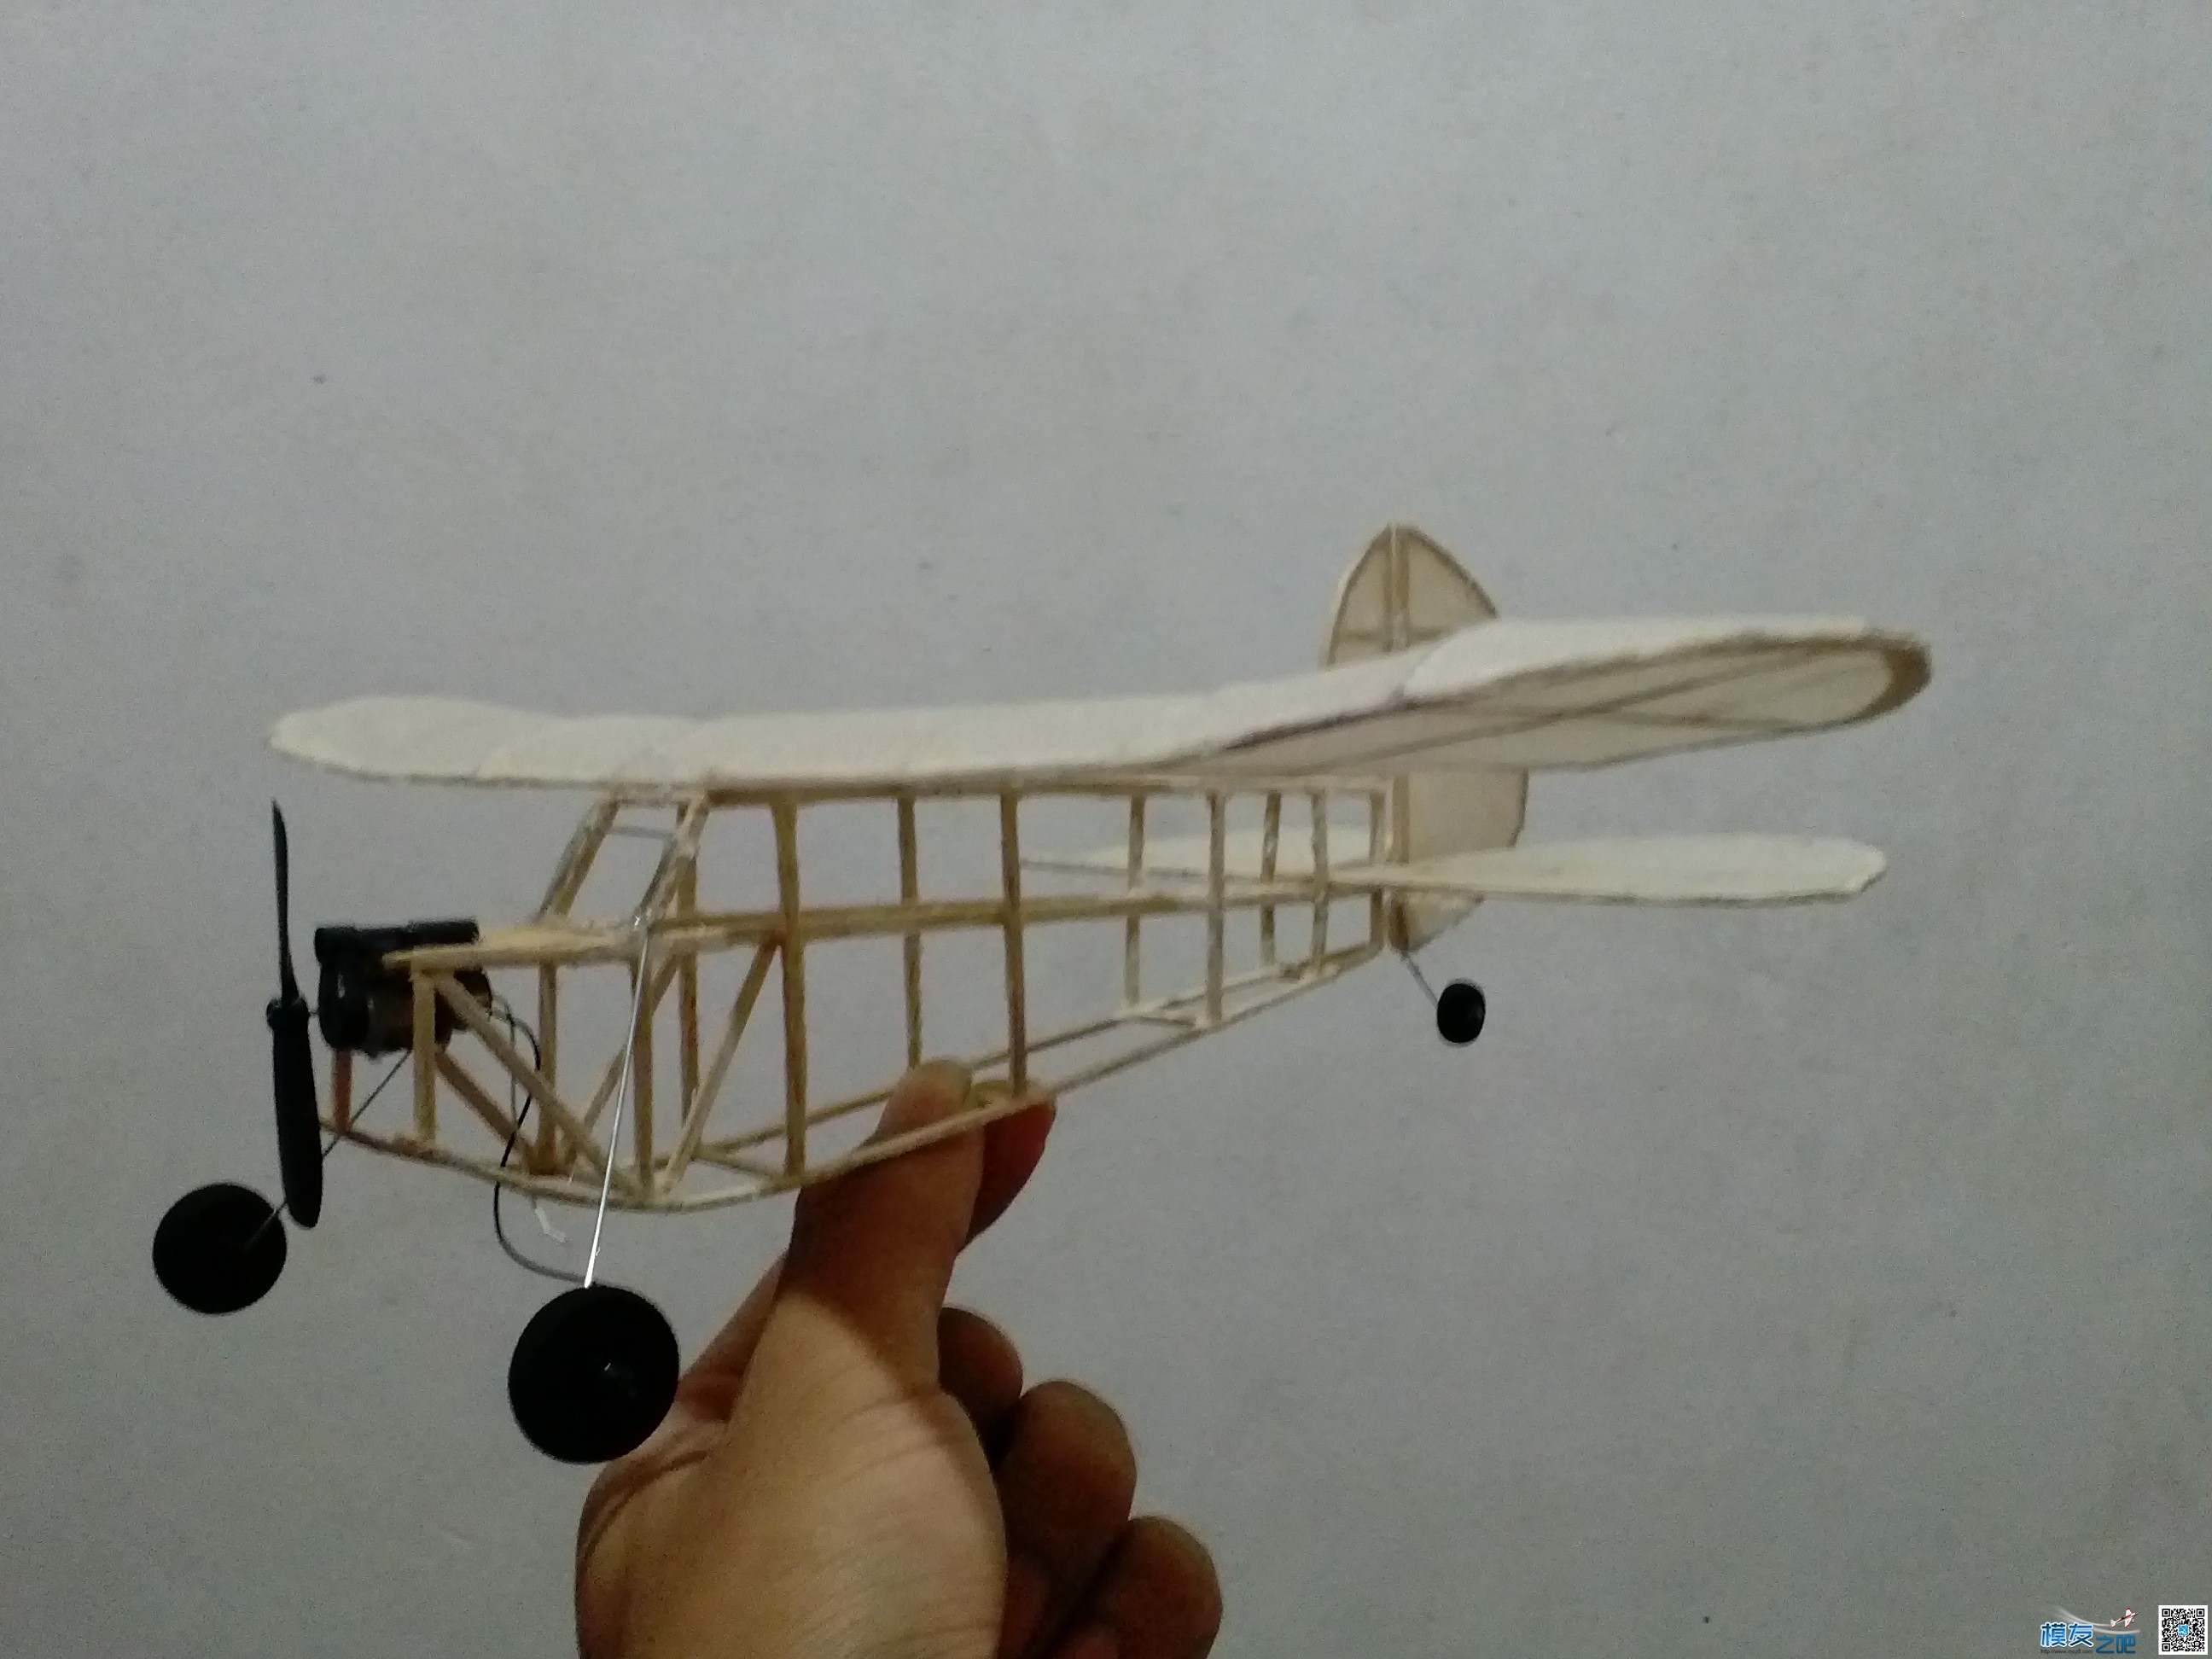 小飞机一枚，第二架300MM翼展小飞机 antonov飞机,各类飞机翼展,飞机翼展分类,飞机翼展长度,飞机翼展比 作者:飞翔的橡皮筋 532 